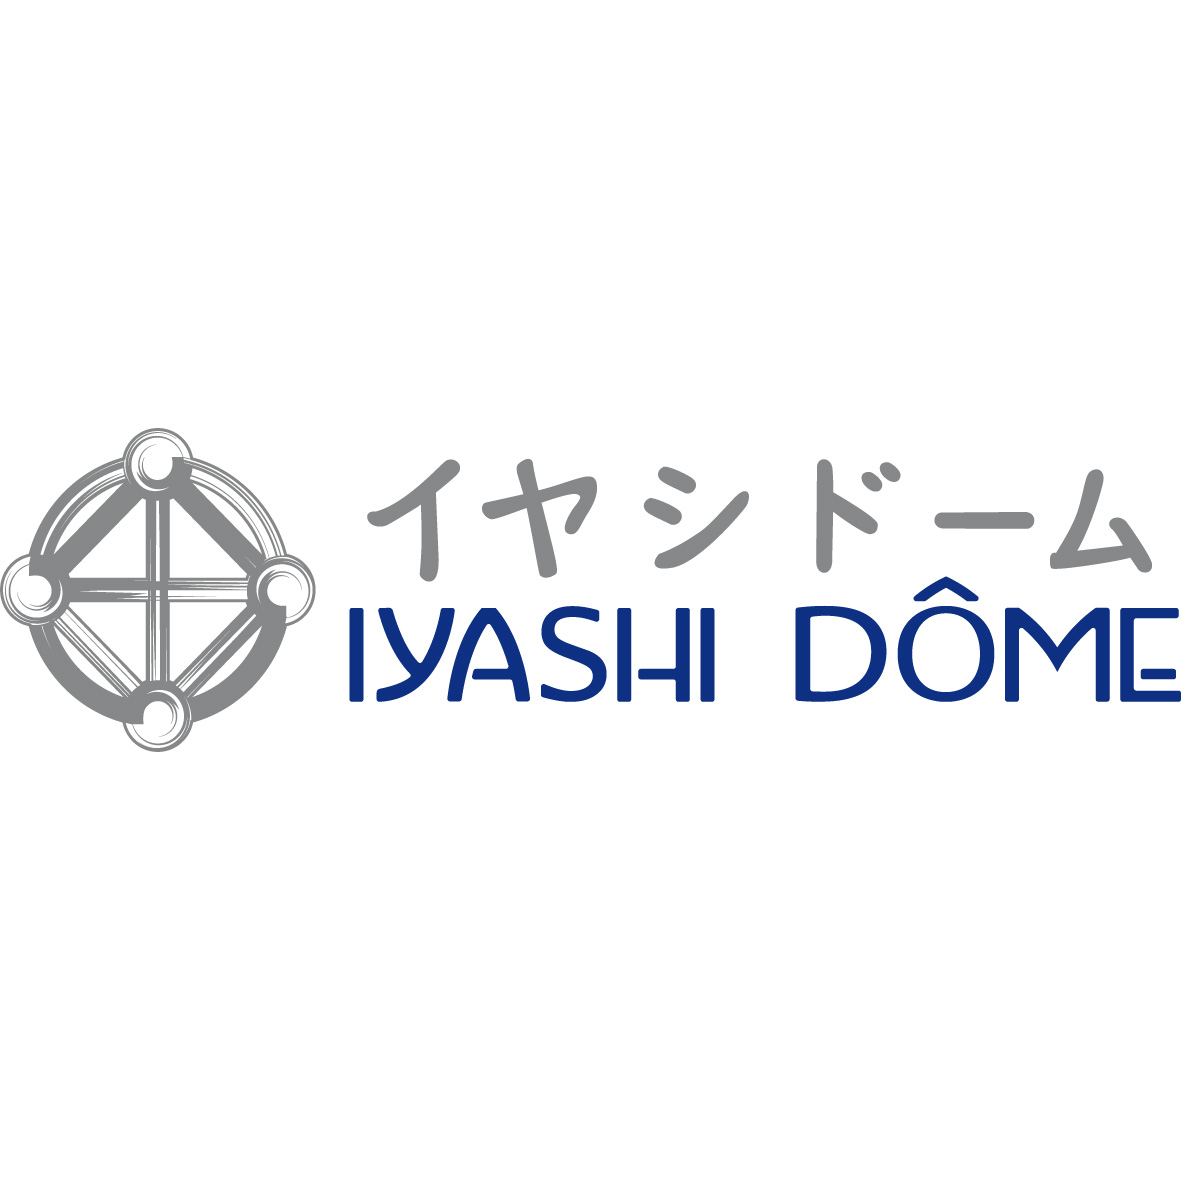 logo iyashi dome